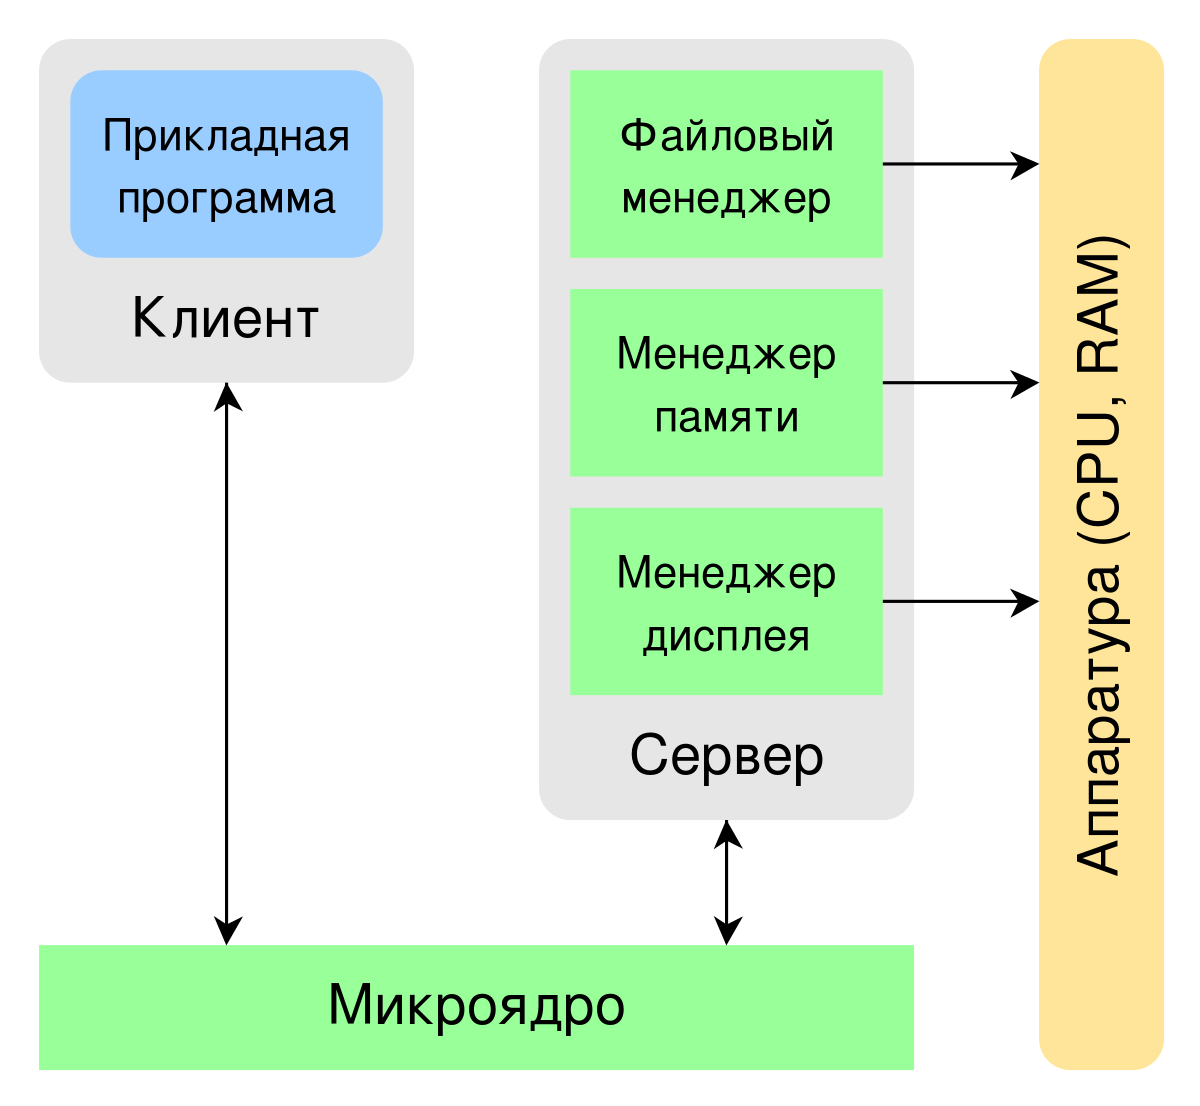 RTOS architecture diagram